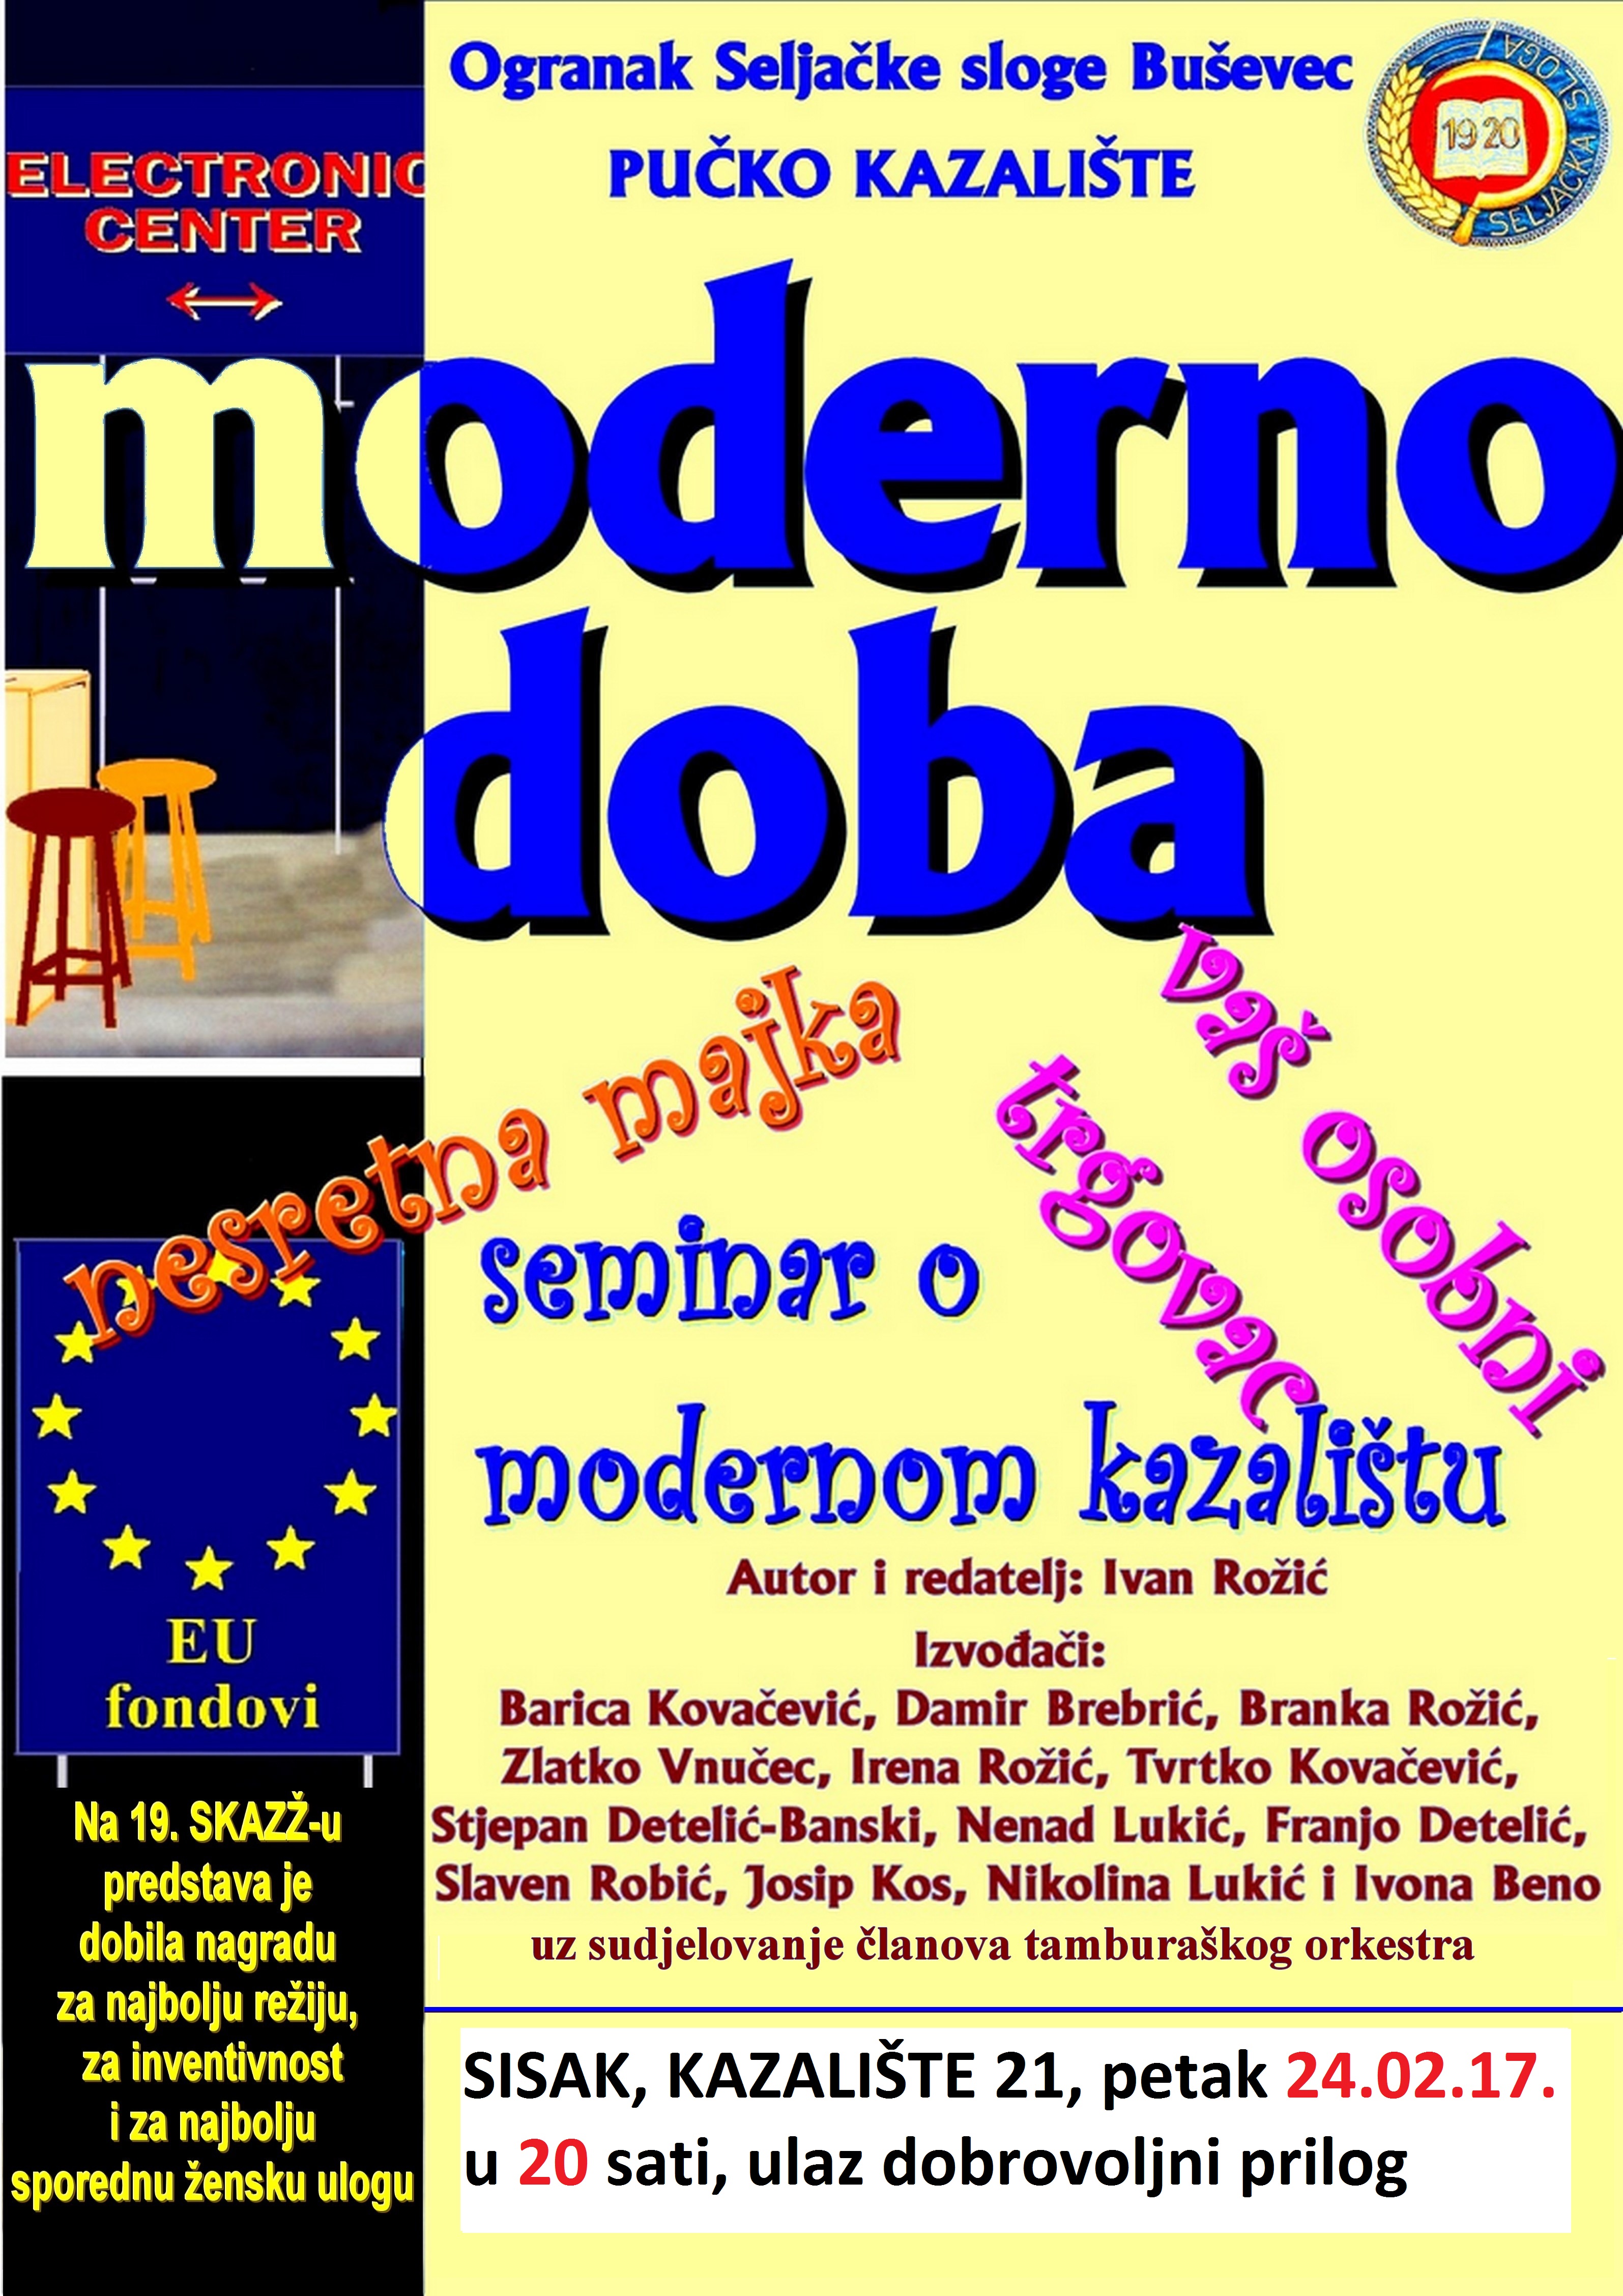 You are currently viewing “Moderno doba” Pučkog kazališta Ogranka Seljačke sloge Buševec